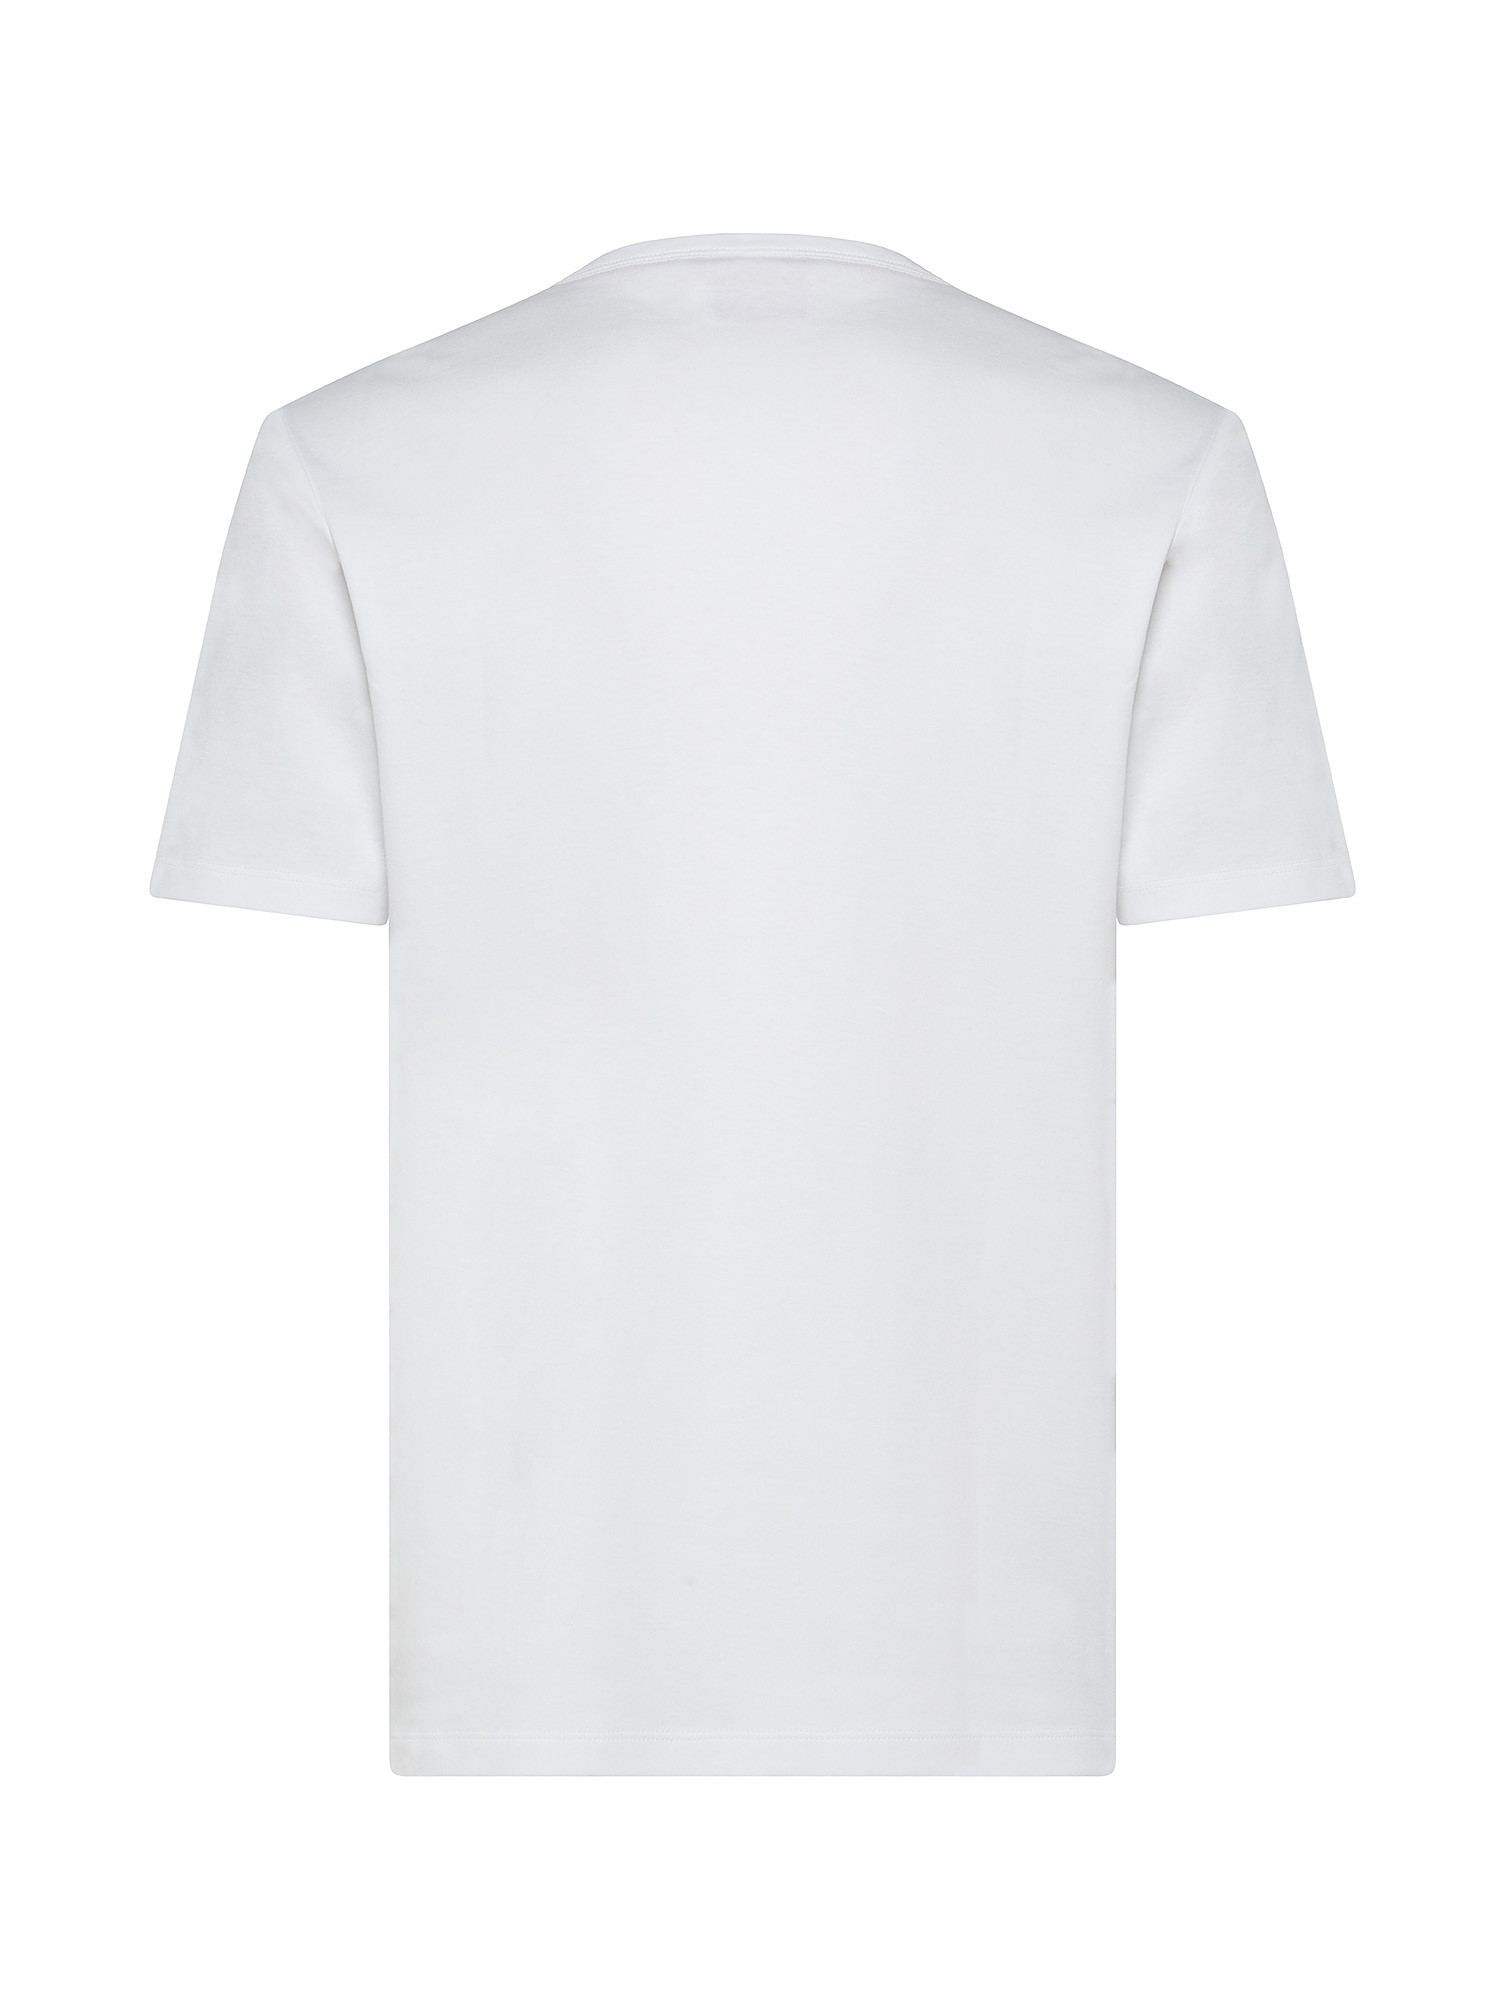 Hugo - Cotton T-Shirt, White, large image number 1